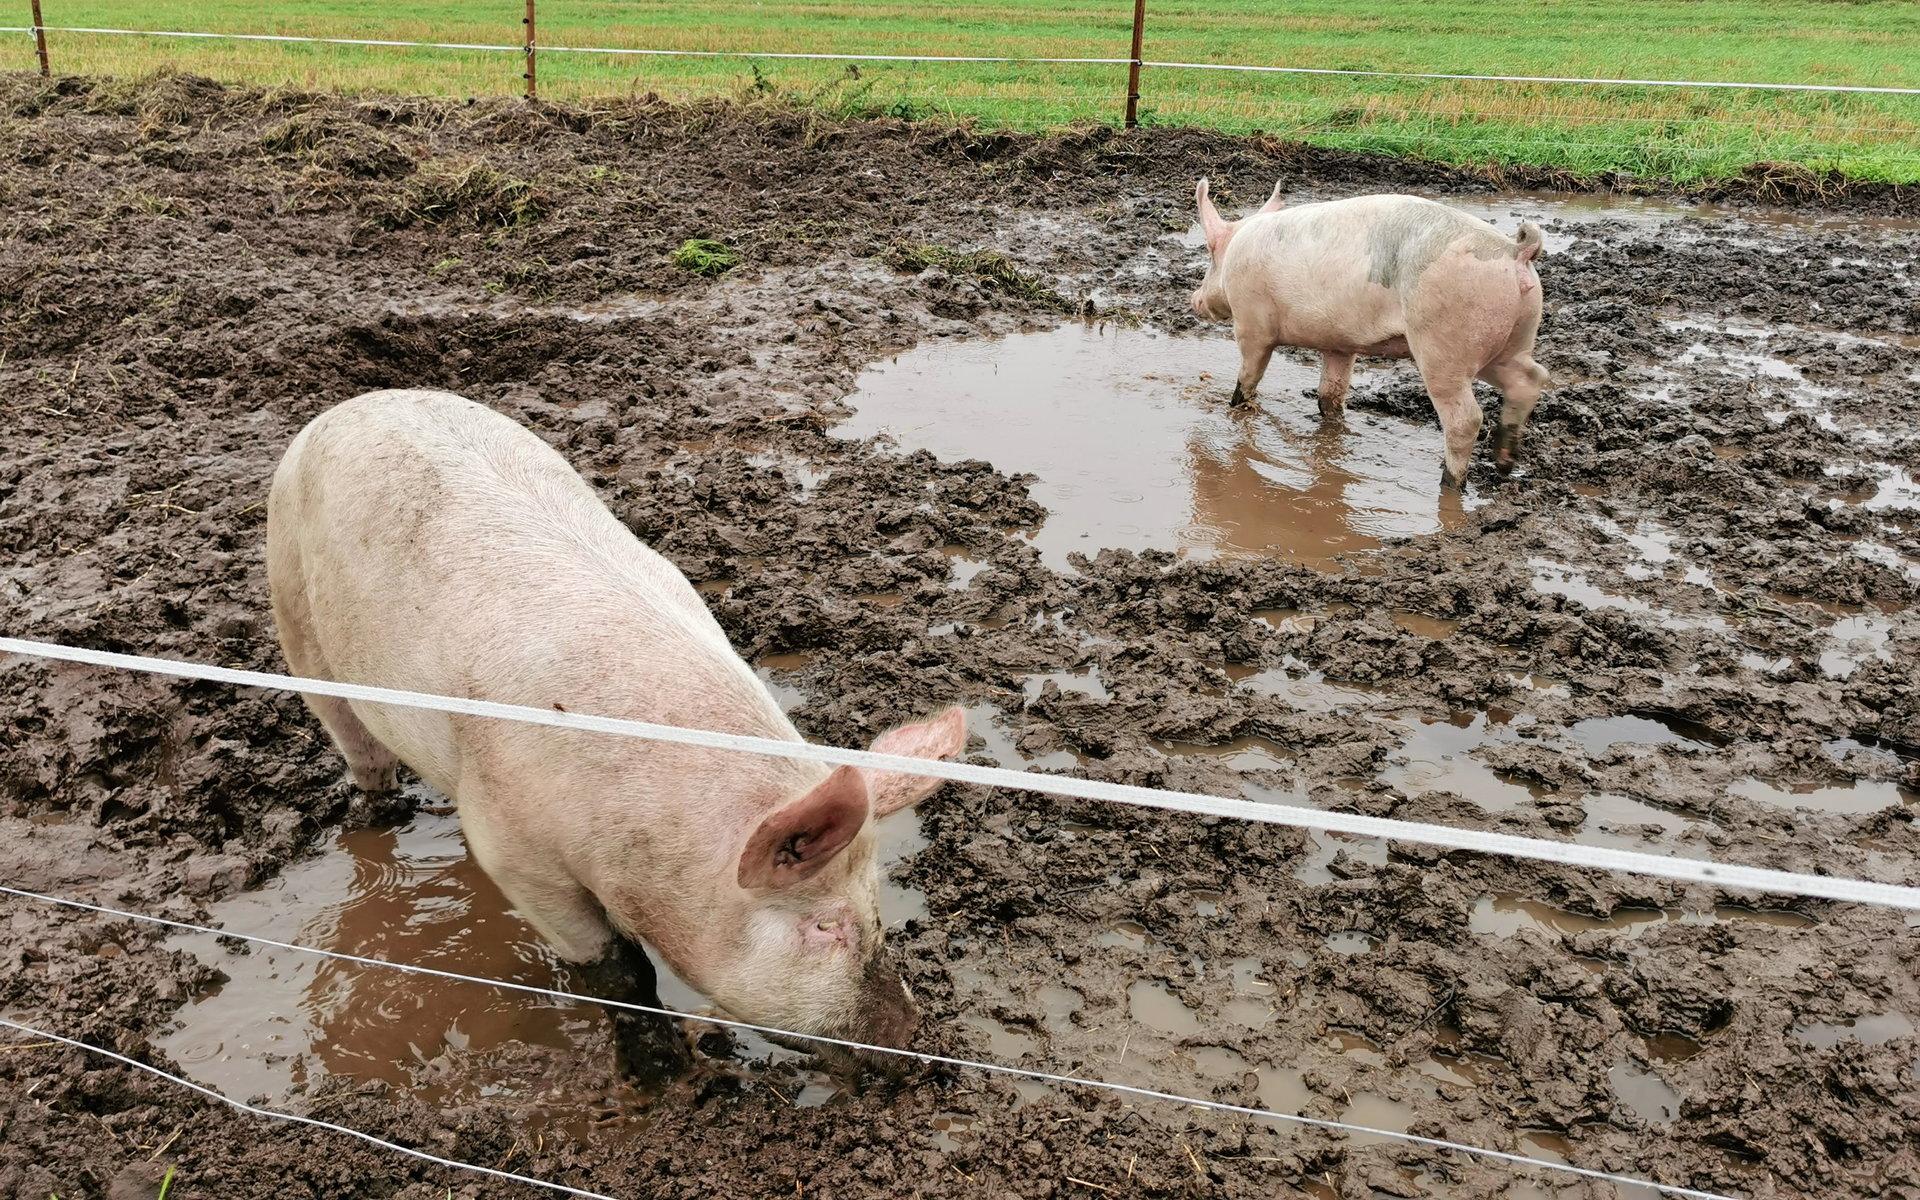 Och av grisarna!